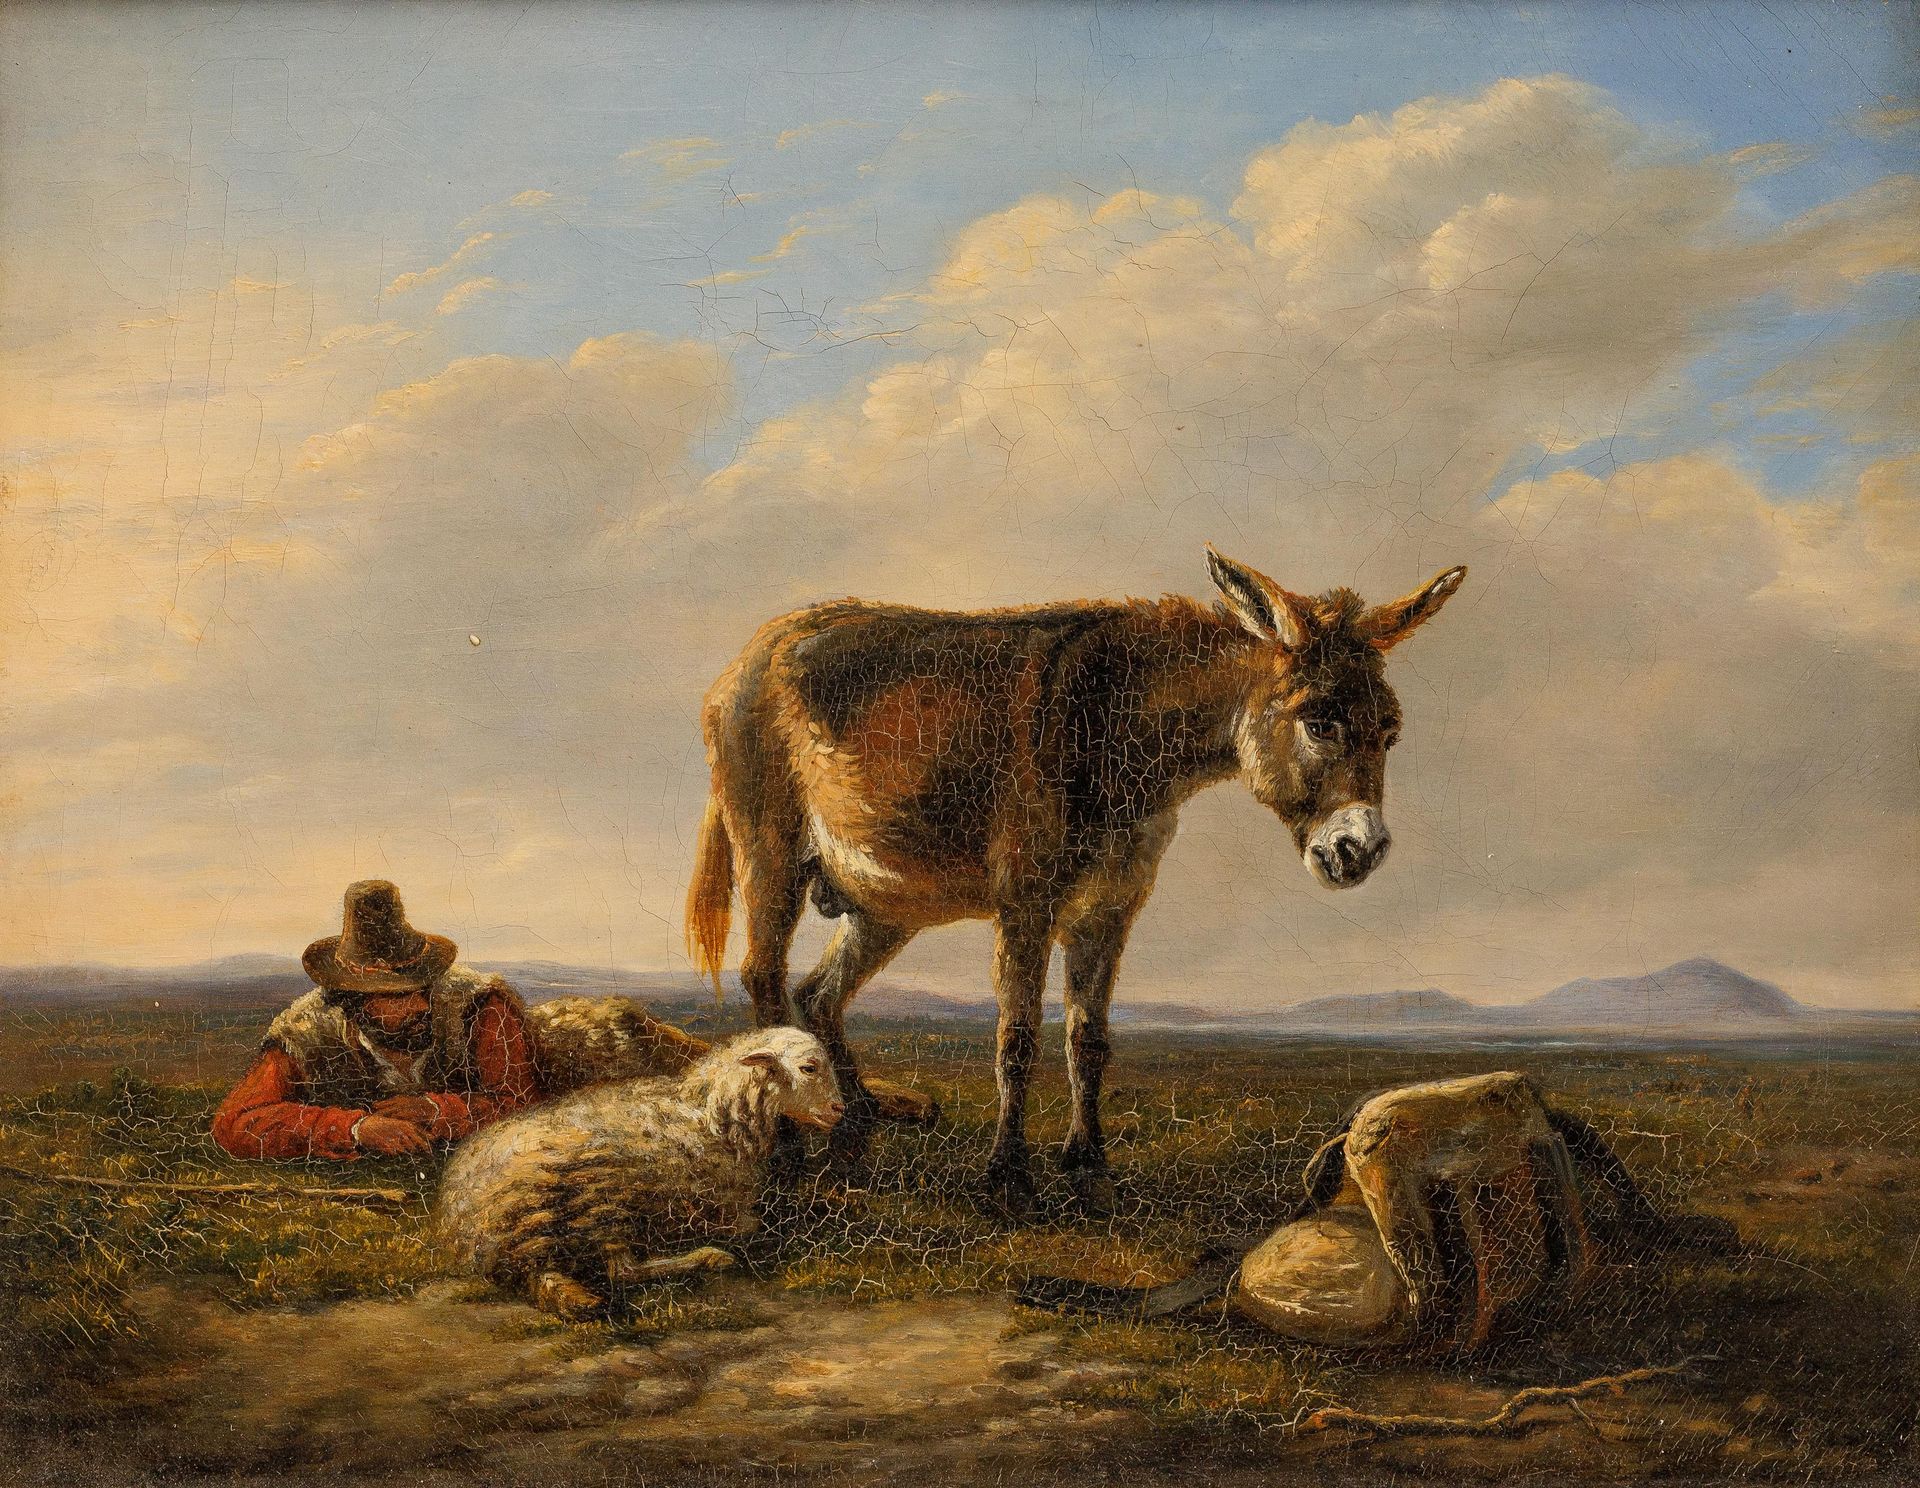 ANONIEM / ANONYME 2/2 XIX Pastor descansando, con burro y ovejas.

De tela.

Mar&hellip;